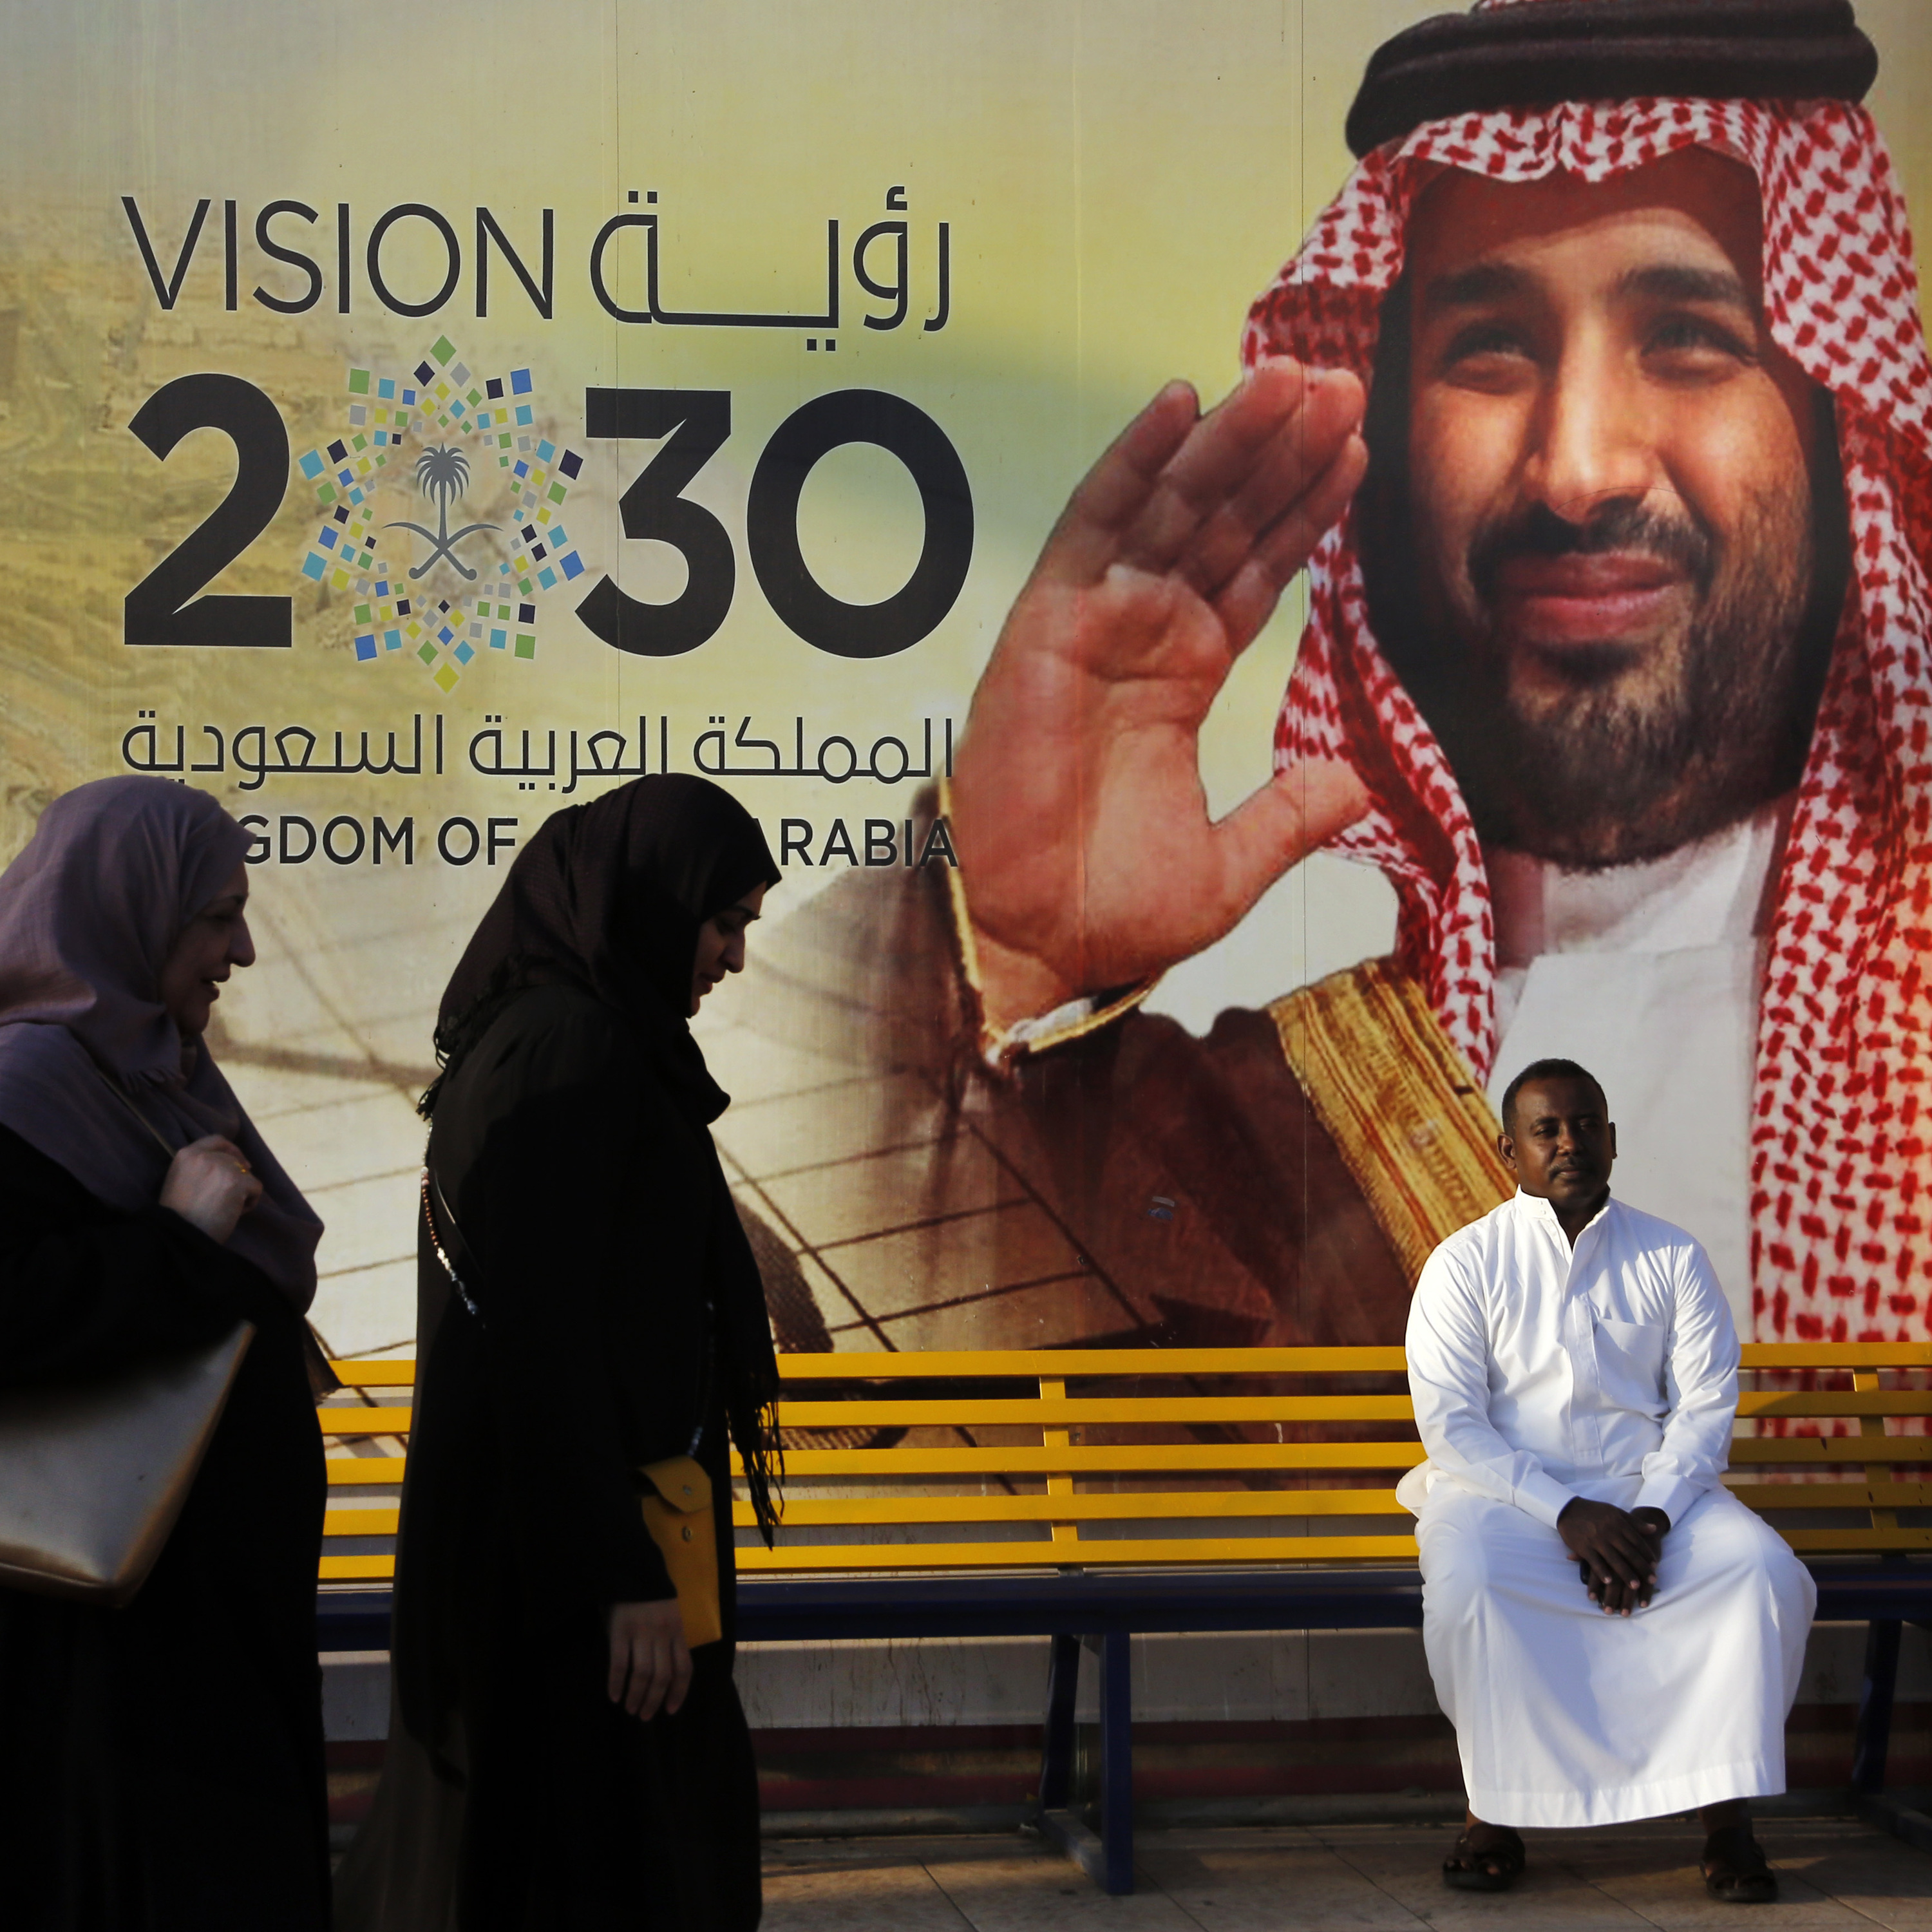 Geht Saudi-Arabien das Geld für die Vision 2030 aus?